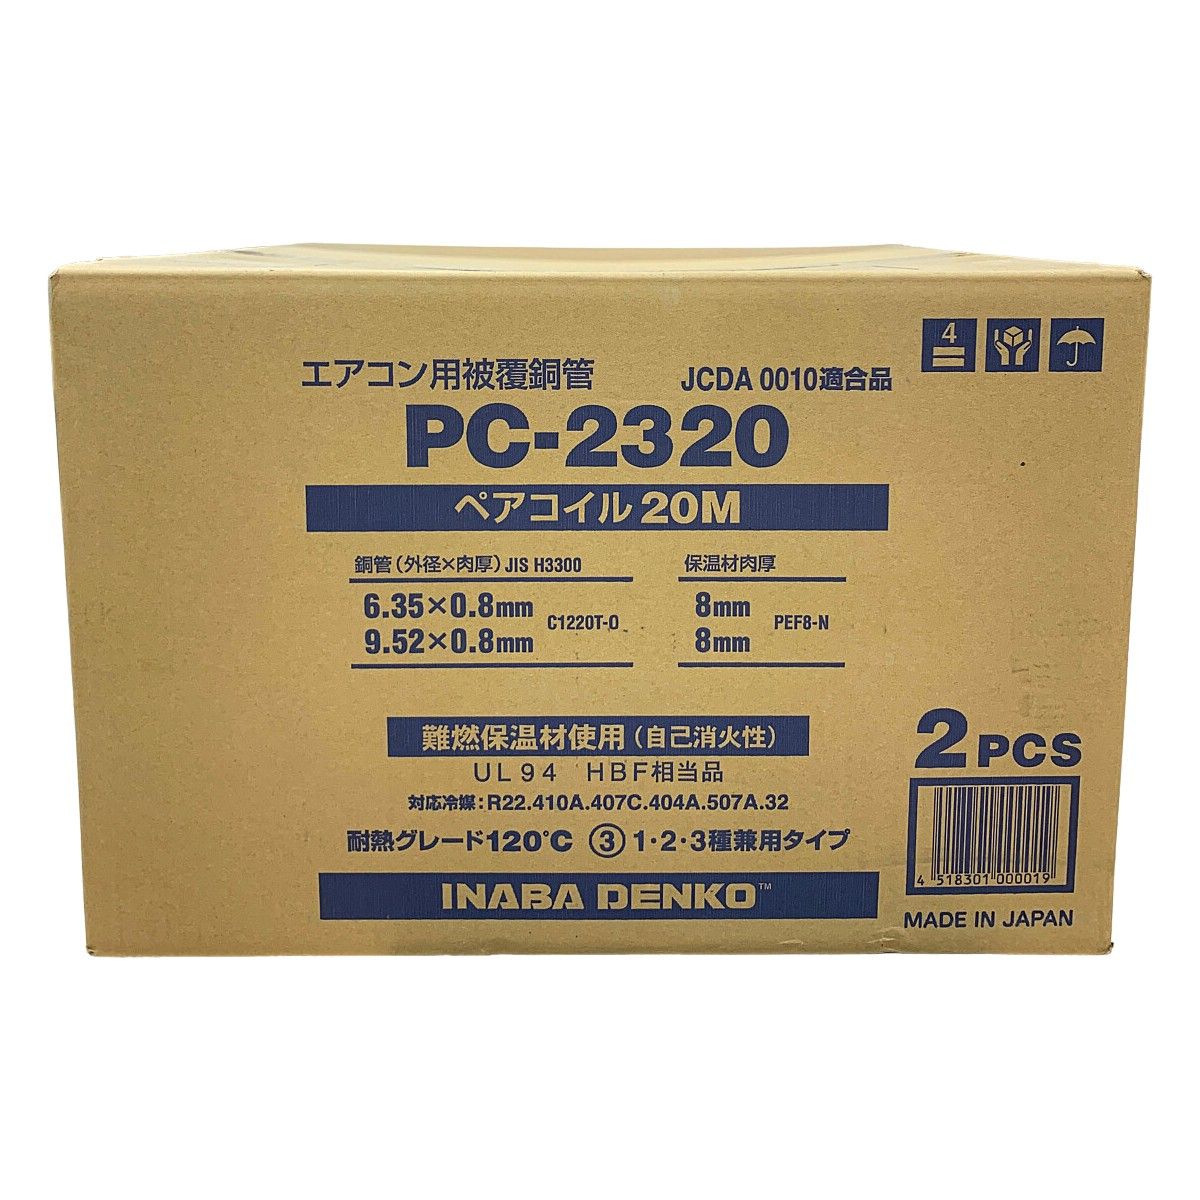 ♭♭INABA DENKO エアコン用被覆導管 ペアコイル20M 2PC PC-2320 JCDA